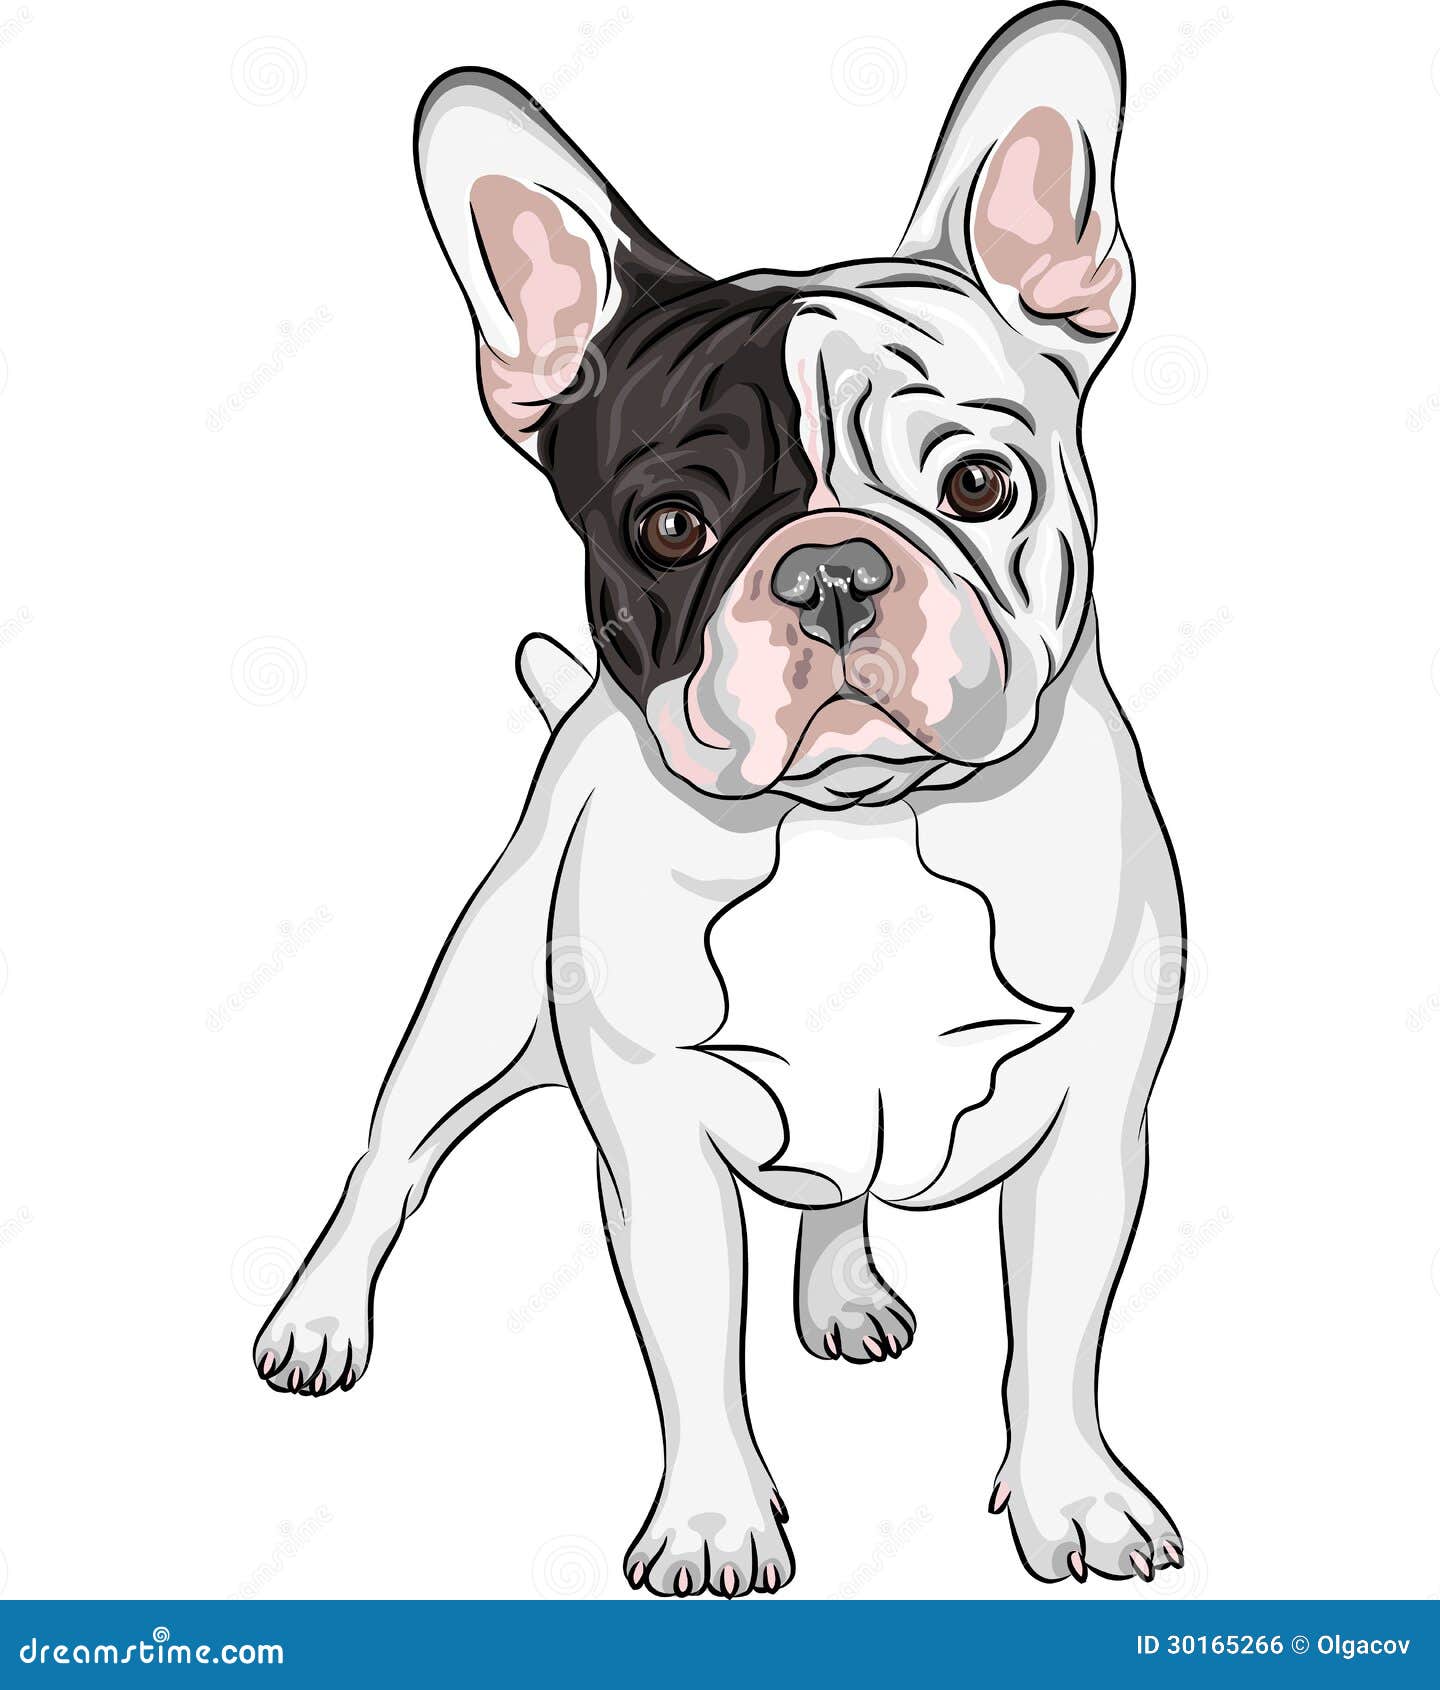  sketch domestic dog french bulldog breed